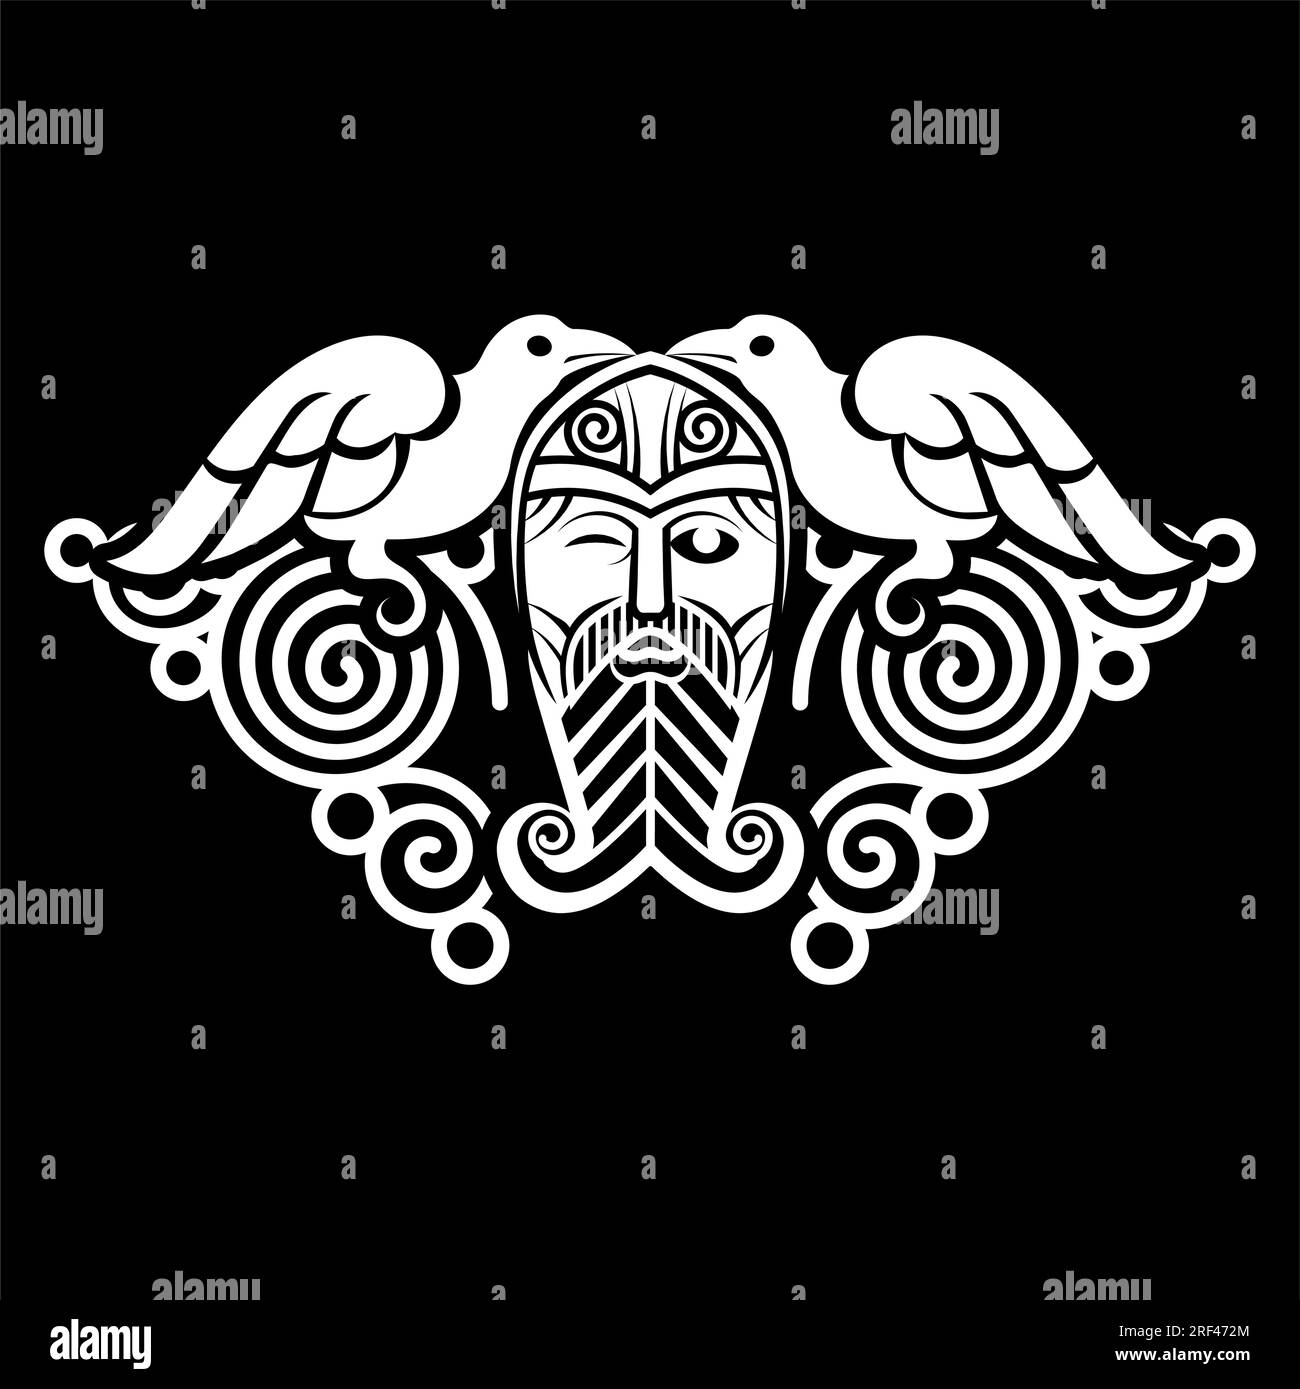 Conception dans le style Old Norse. Dieu suprême Odin, deux corneilles et signes runique dessinés dans le style celtique-scandinave Illustration de Vecteur